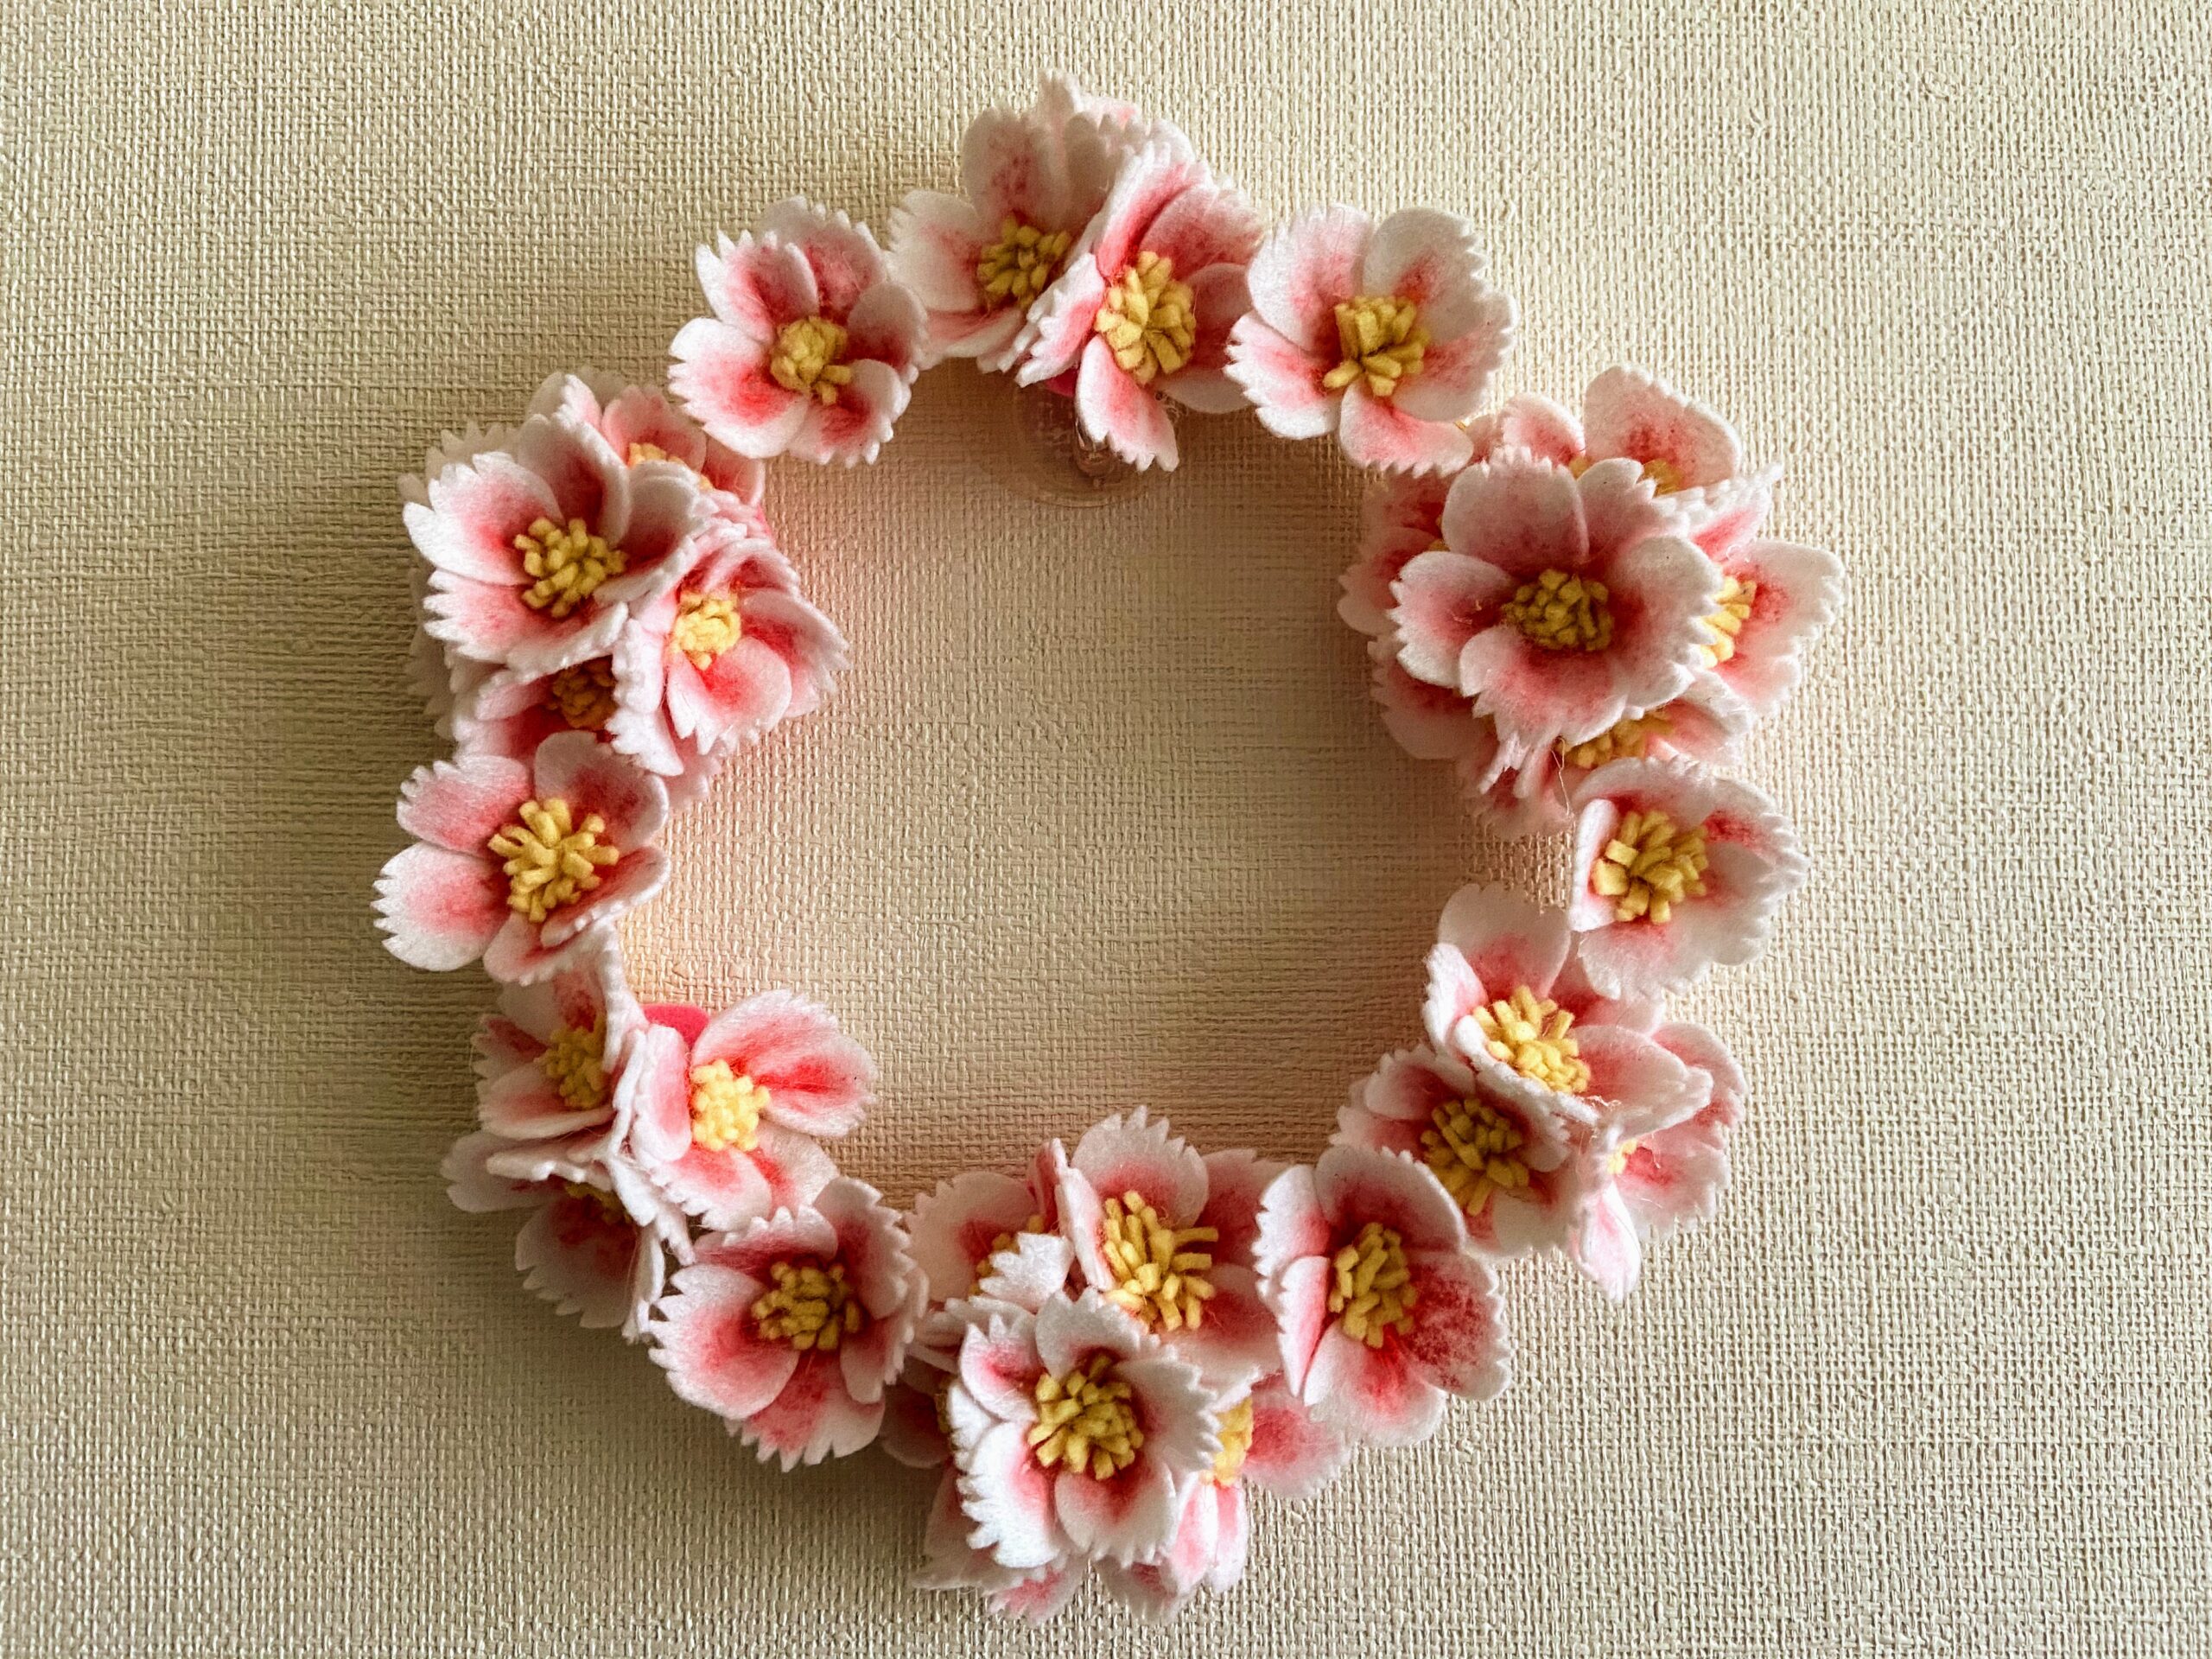 100均フェルトで簡単手作り 桜の花のリース | Sunny's Life ~お気にいりと暮らす毎日